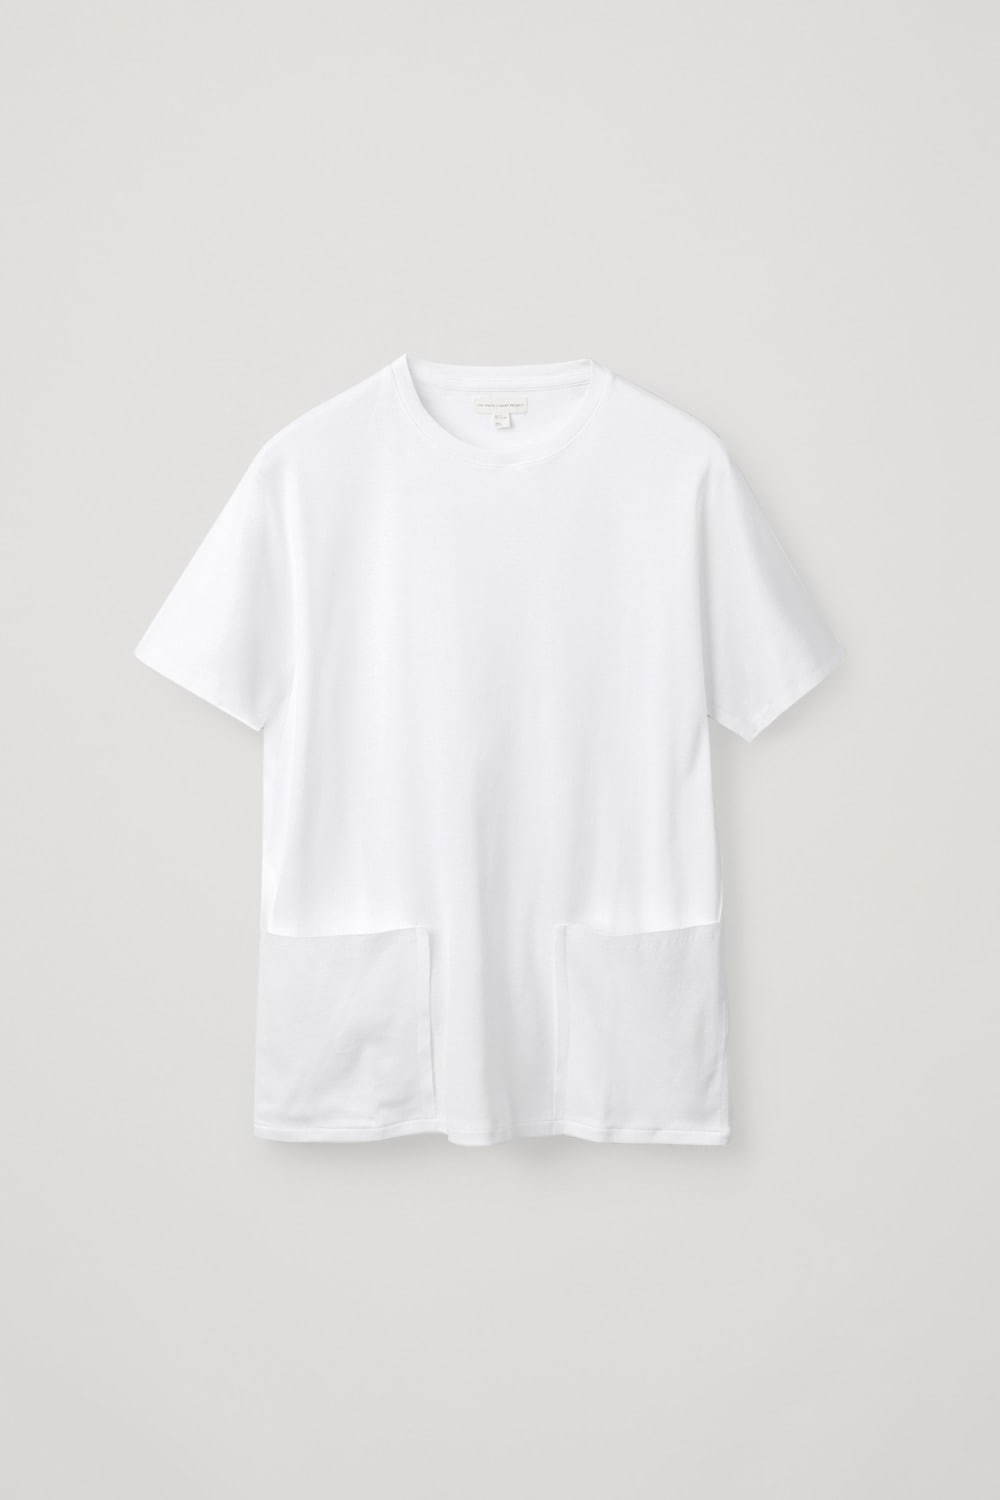 ツインポケット オーガニックコットンTシャツ 5,500円(税込)